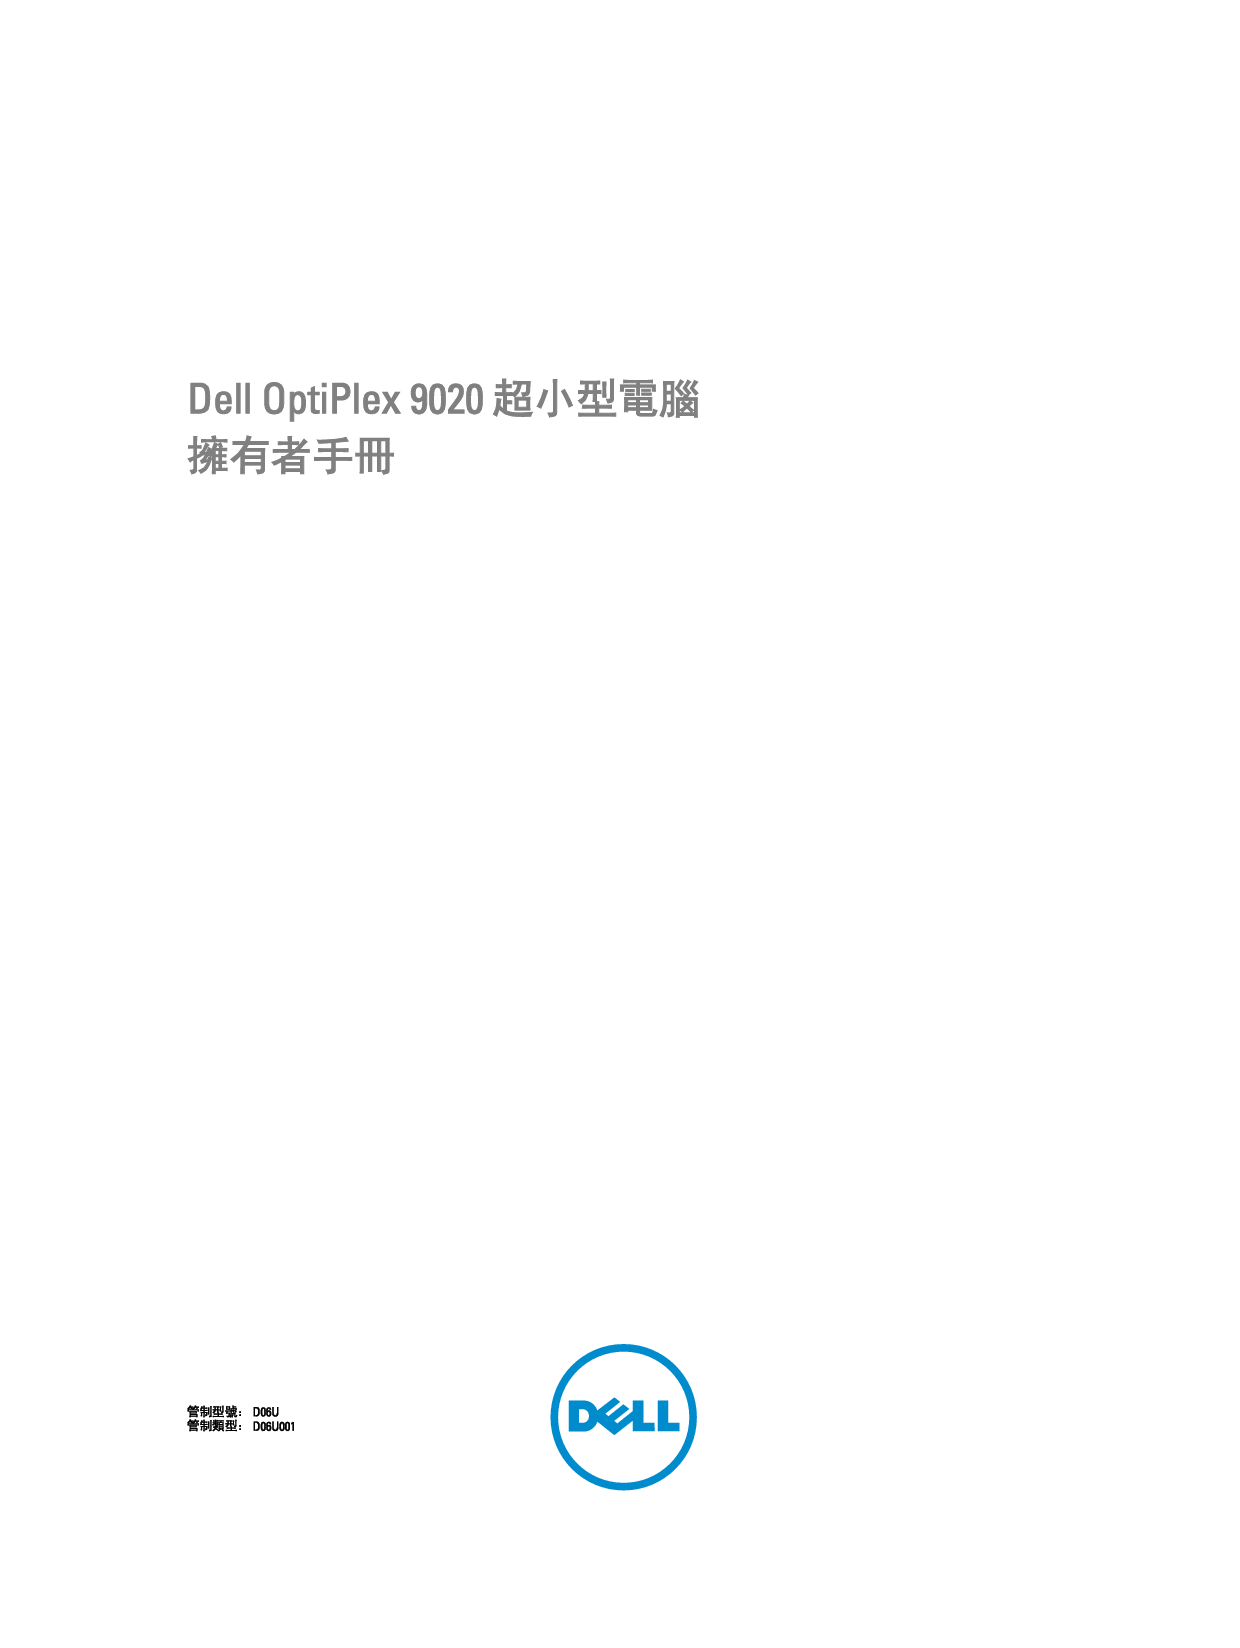 戴尔 Dell Optiplex 9020 超小型 繁体 用户手册 封面